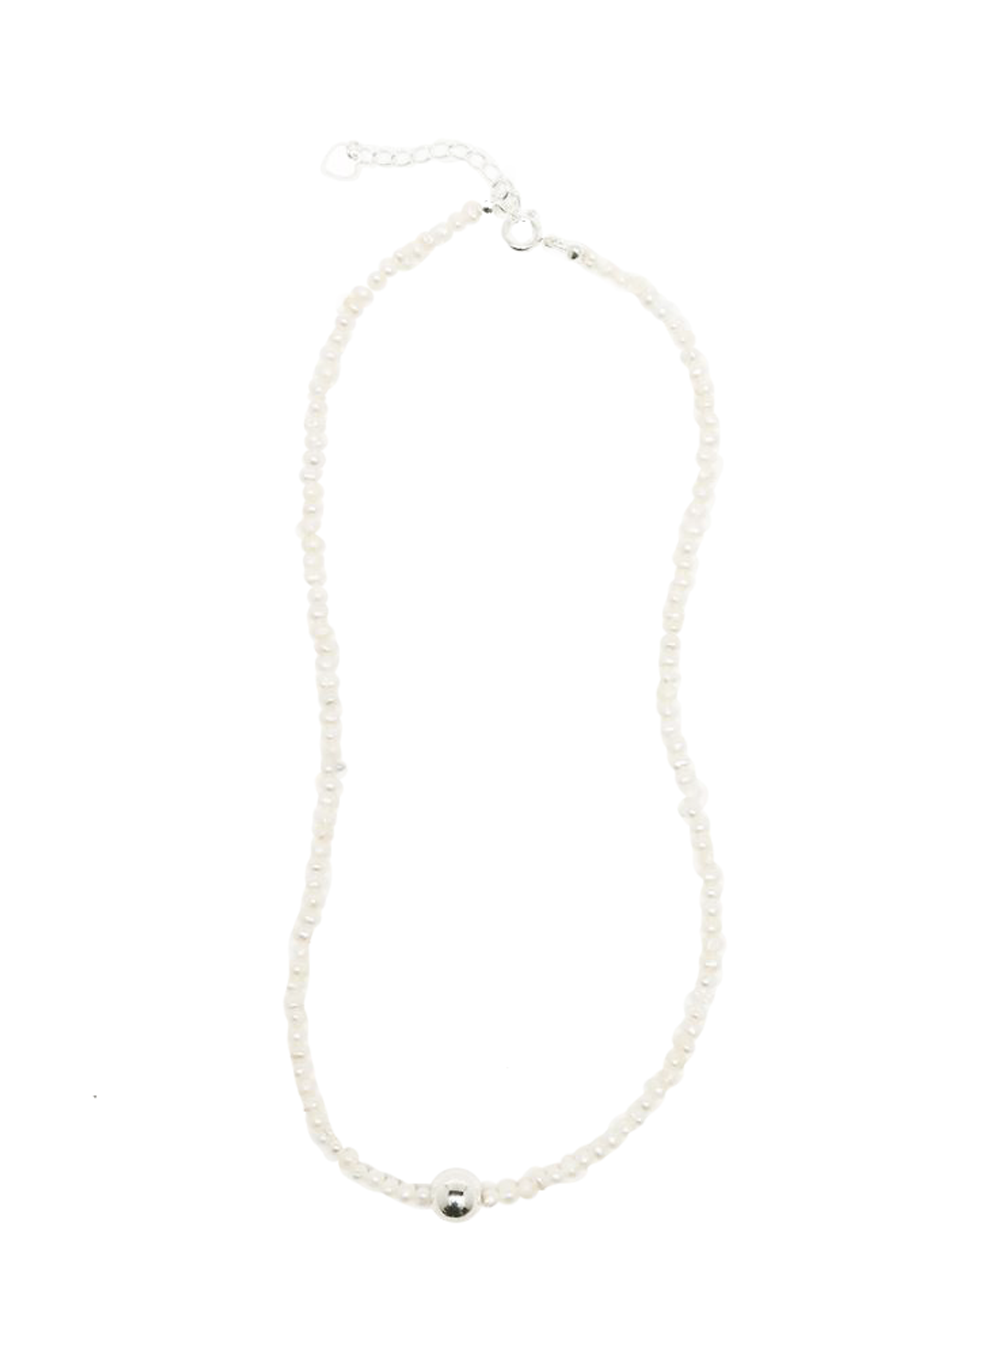 Silver ball pendant necklace